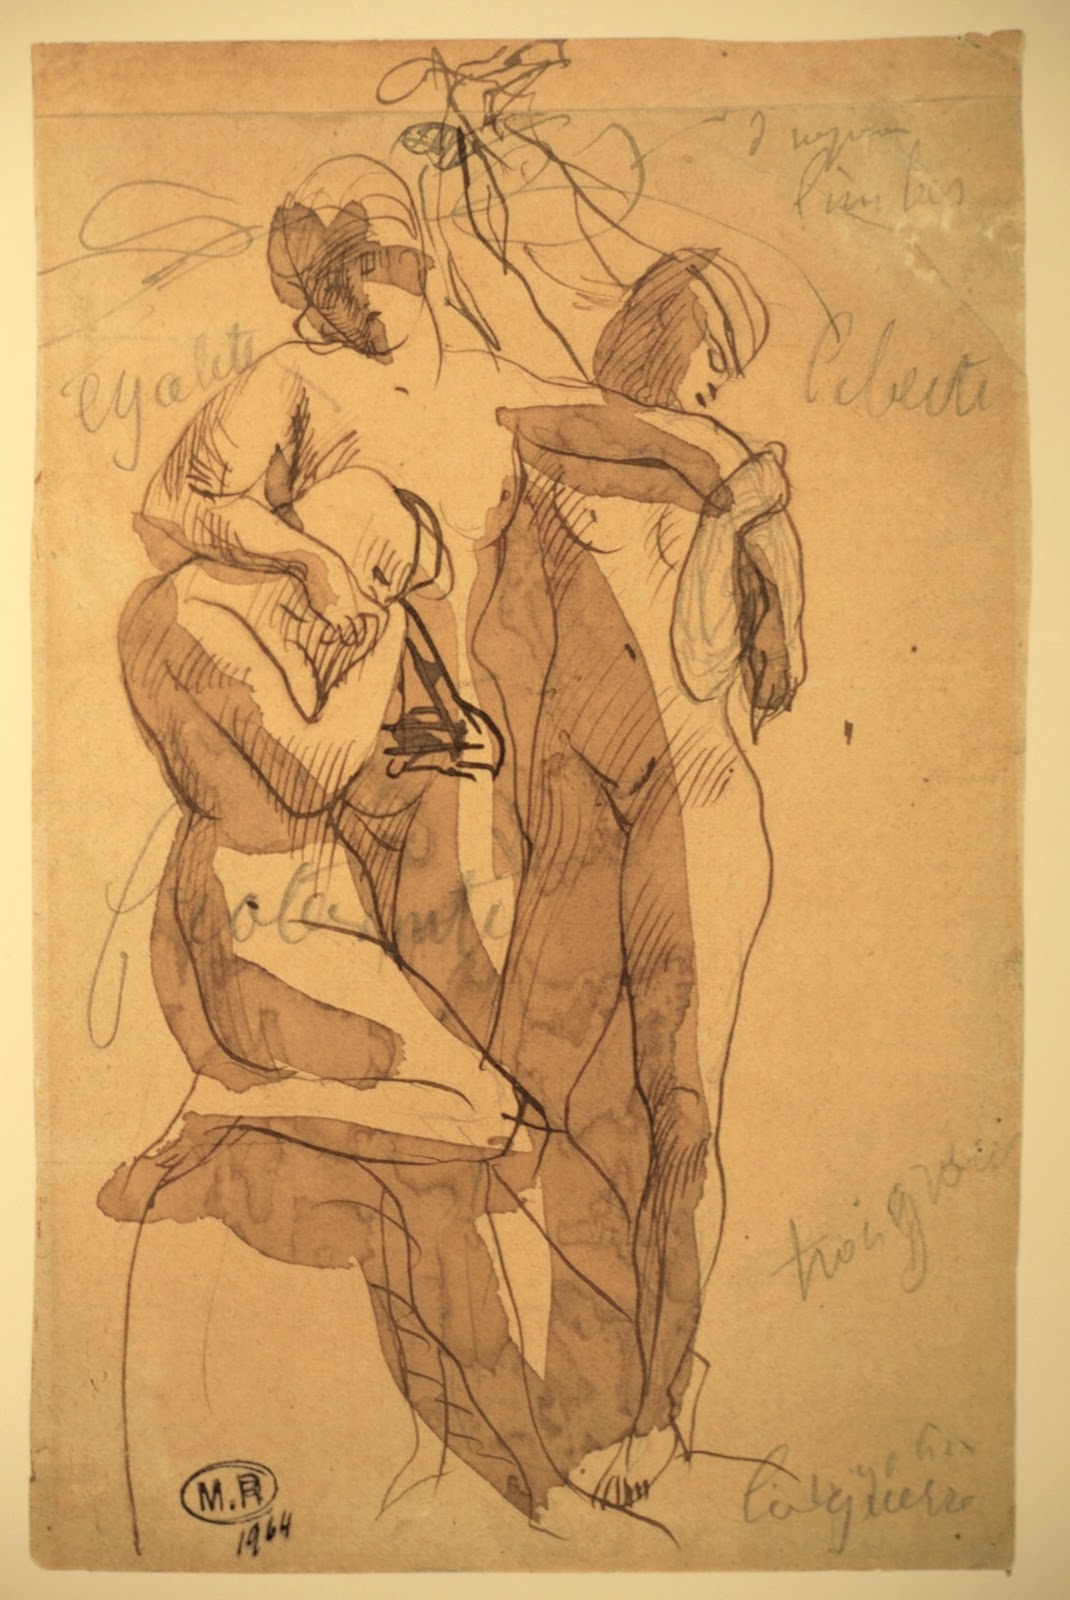 Auguste+Rodin-1840-1917 (162).JPG